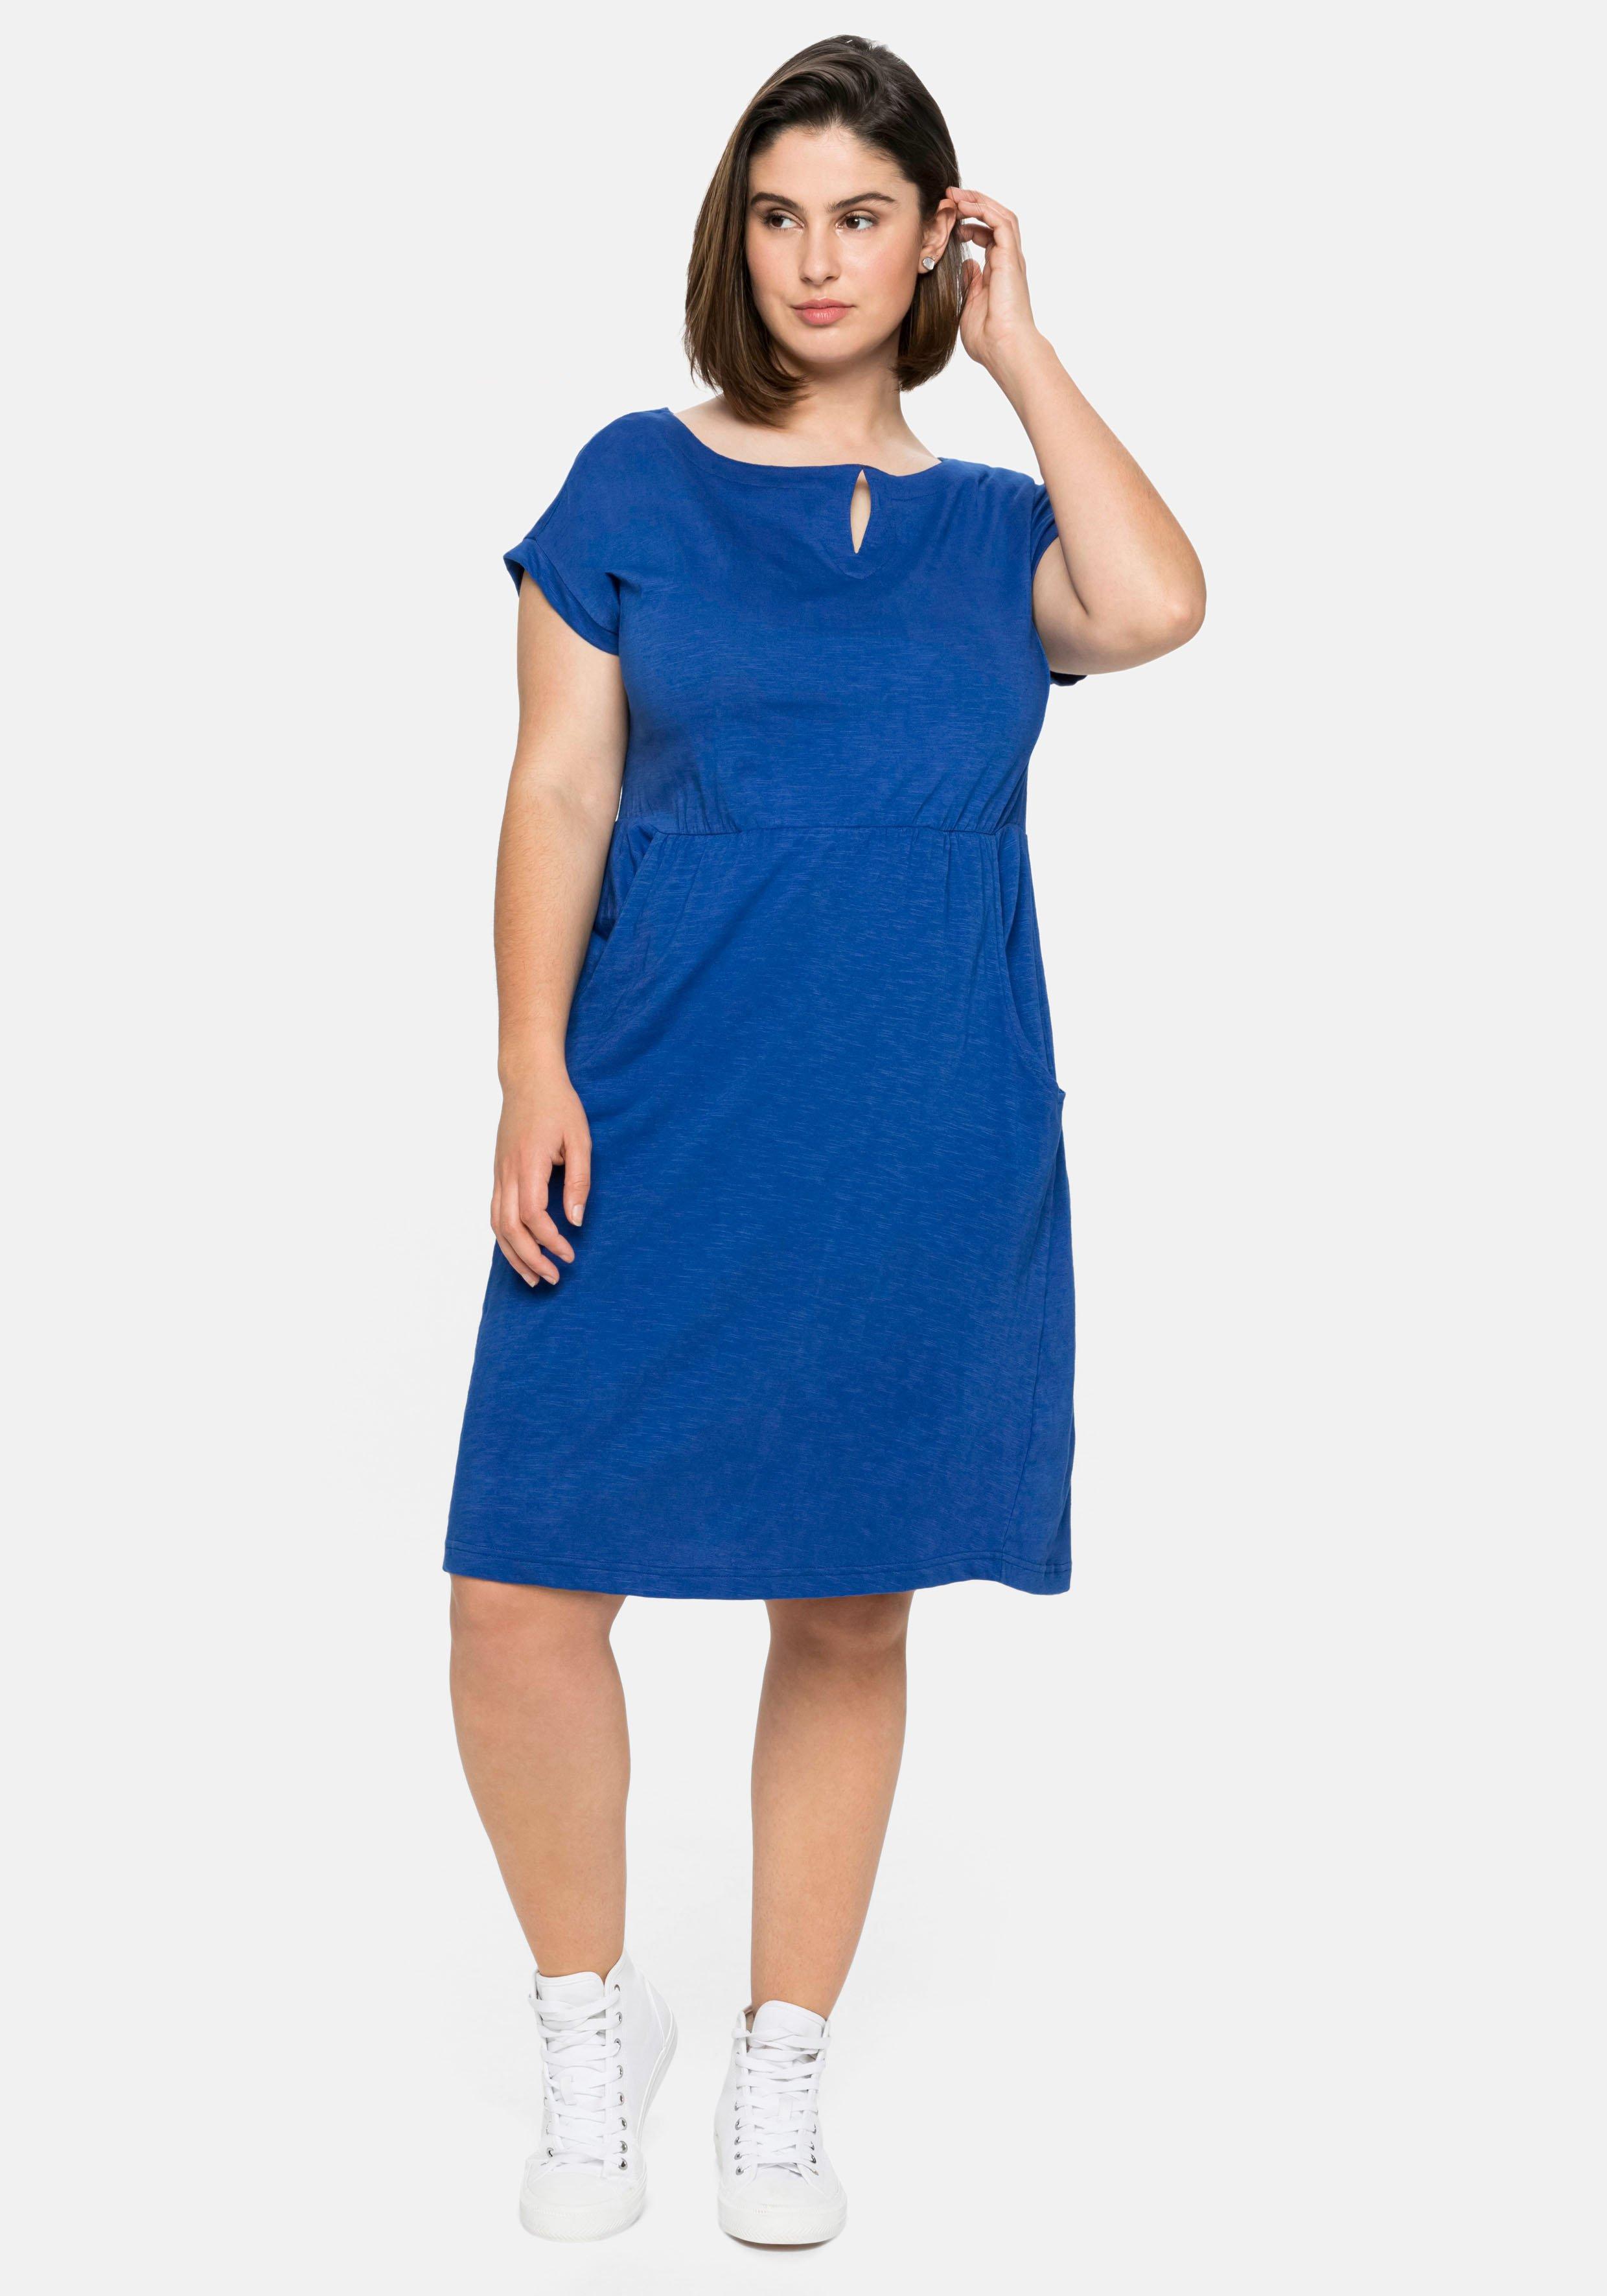 Jerseykleid mit weitem | Ausschnitt royalblau und sheego - Taschen